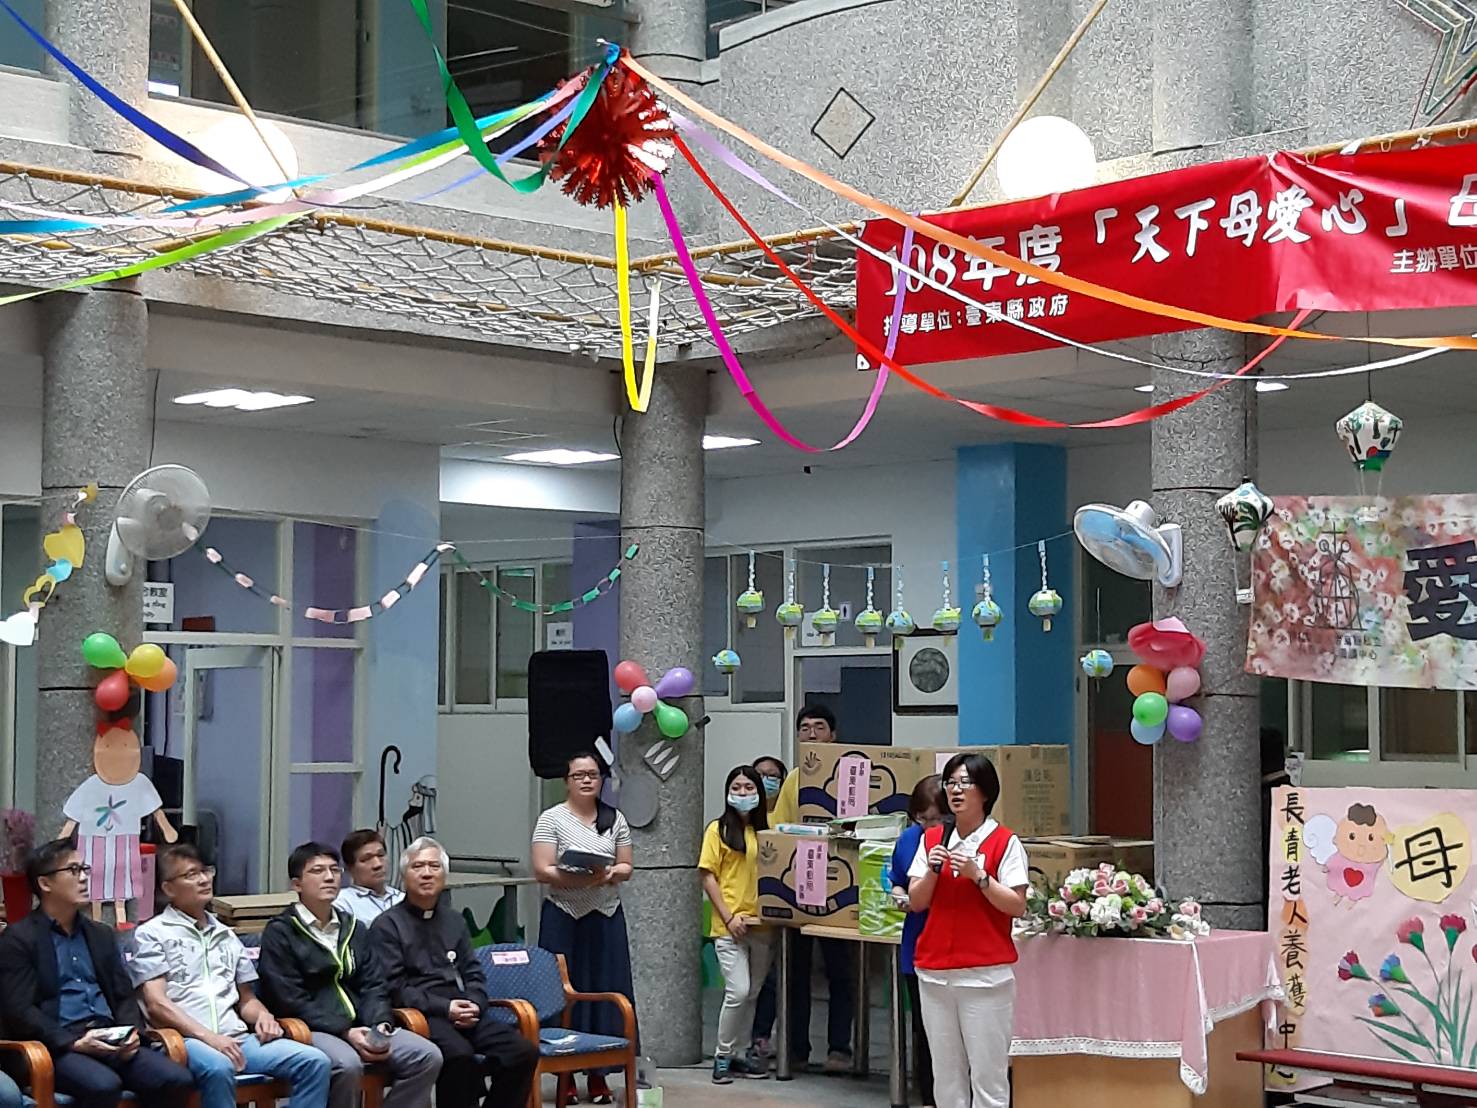 臺東郵局辦理108年慶祝母親節暨關懷獨居長者公益活動